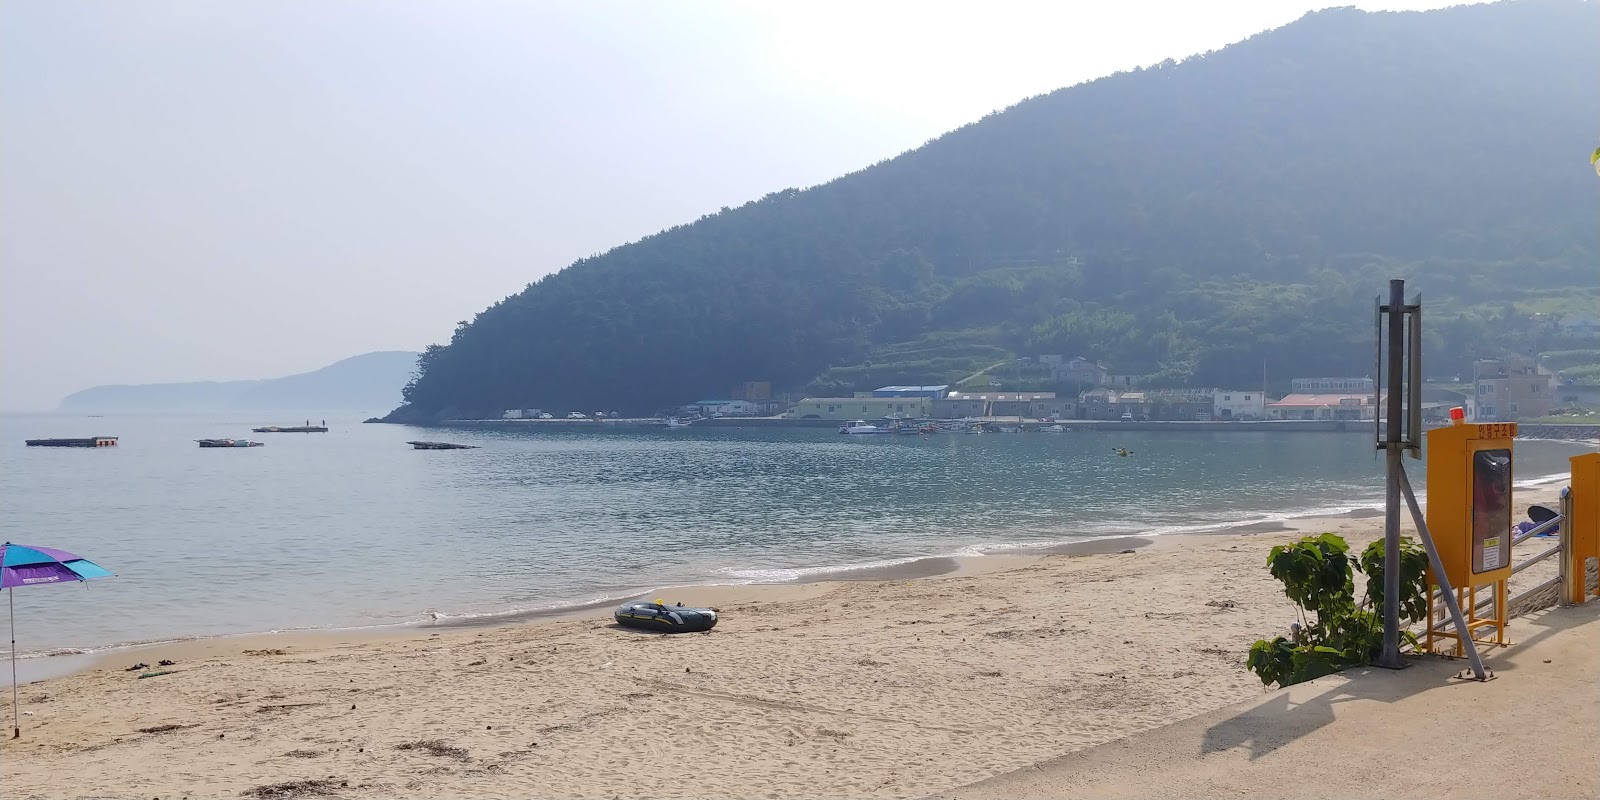 Zdjęcie Deokwon Beach - popularne miejsce wśród znawców relaksu